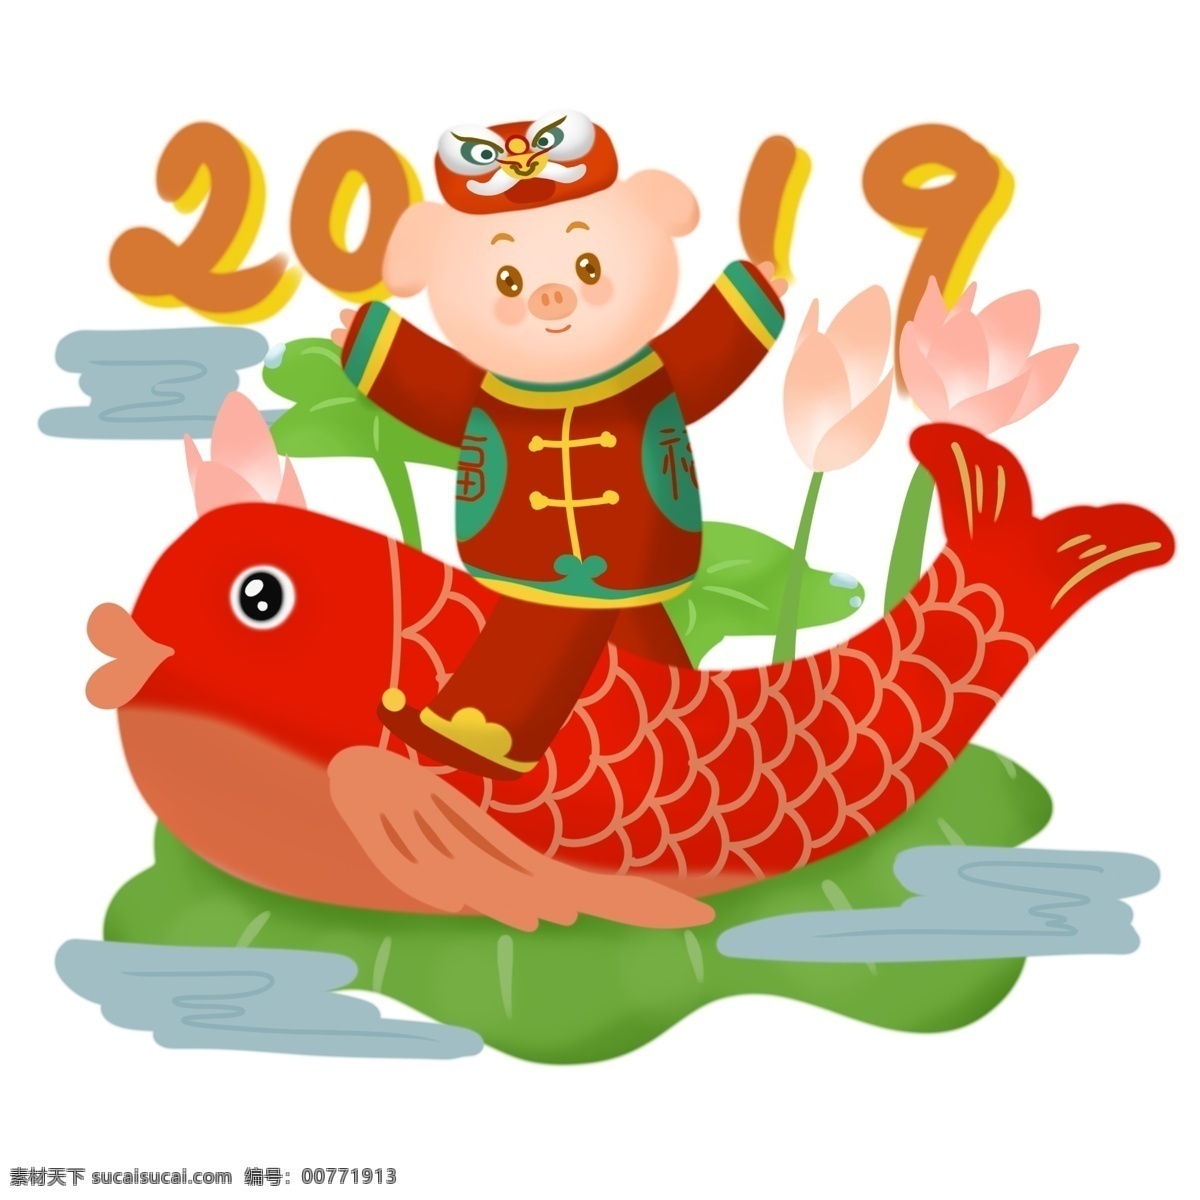 2019 猪年 新年 祝福 发财 手绘 插画 猪猪 猪仔 可爱猪 财富 富贵吉祥 猪年大吉 祝福插画 红色系